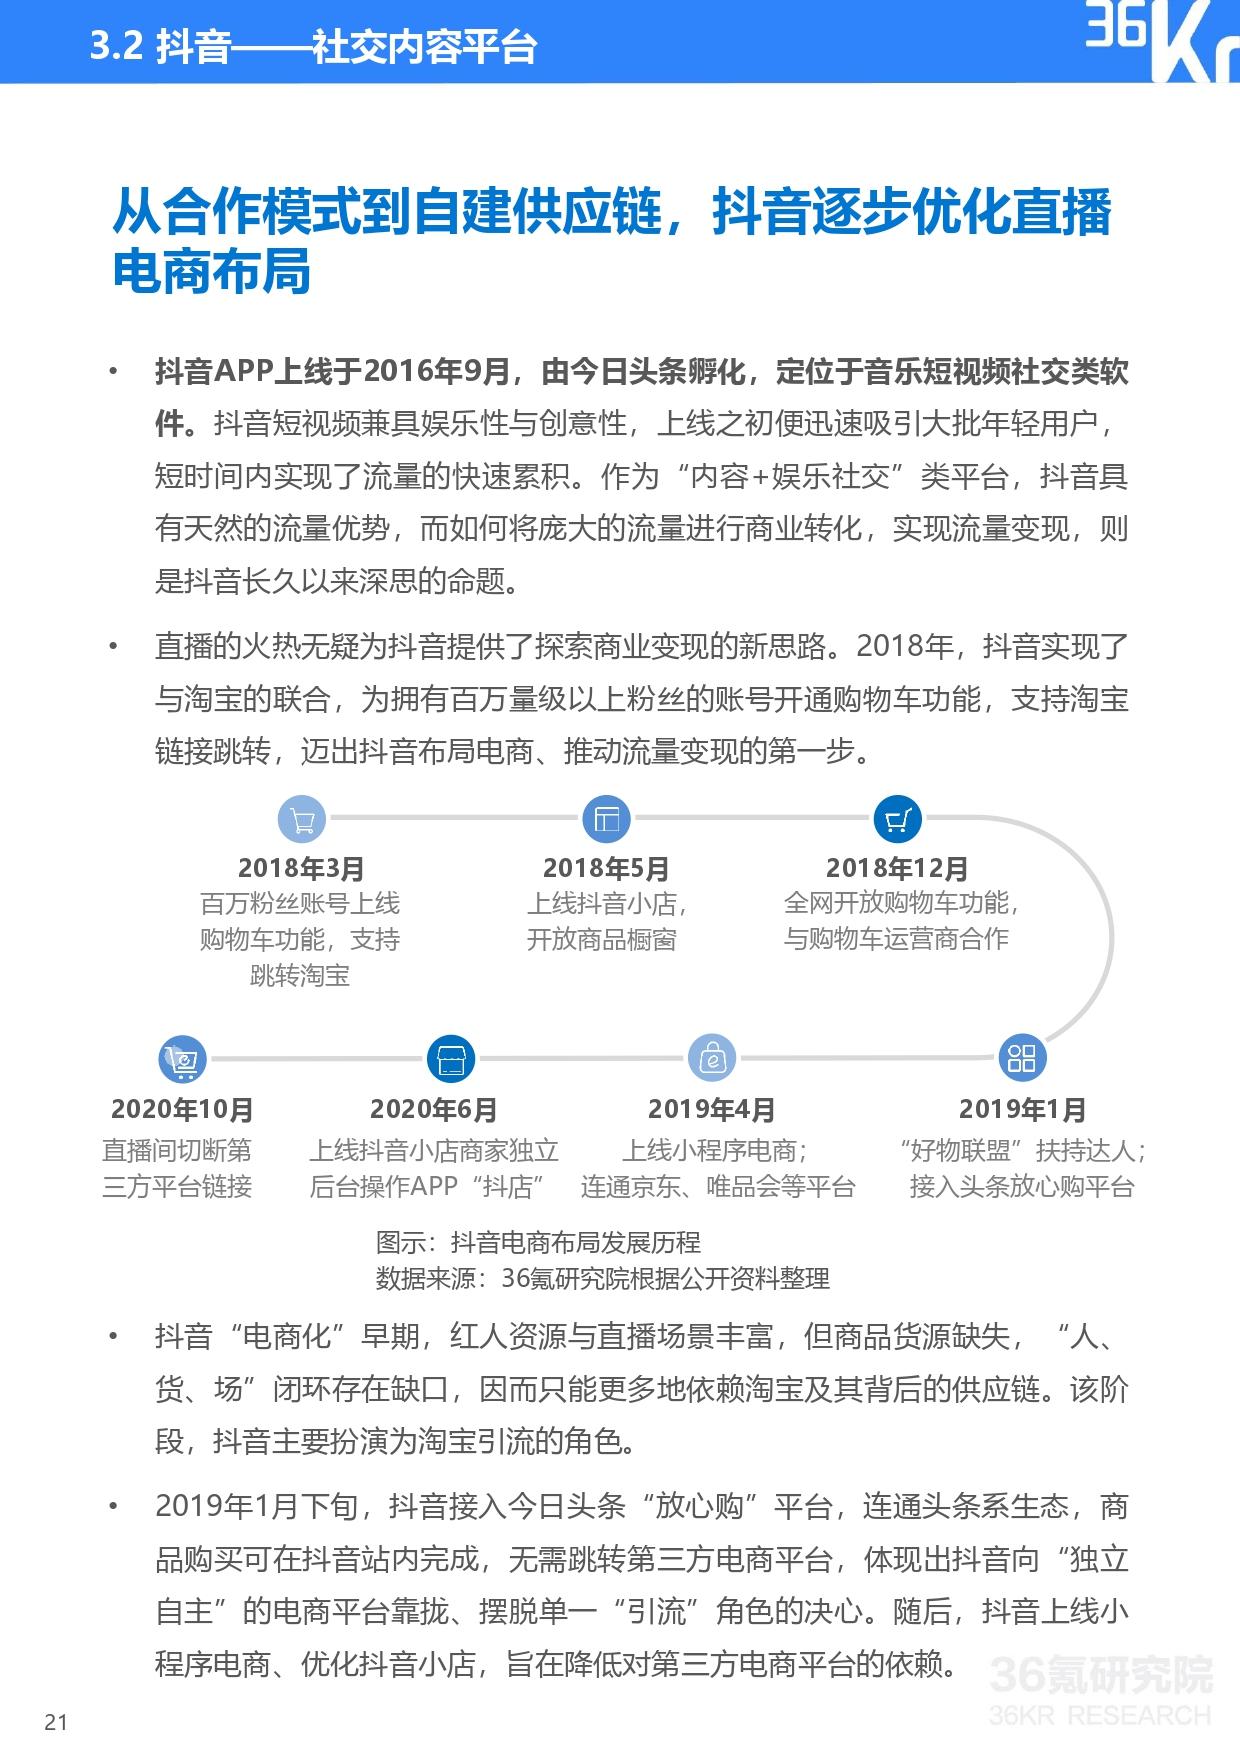 36氪研究院 | 2020年中国直播电商行业研究报告